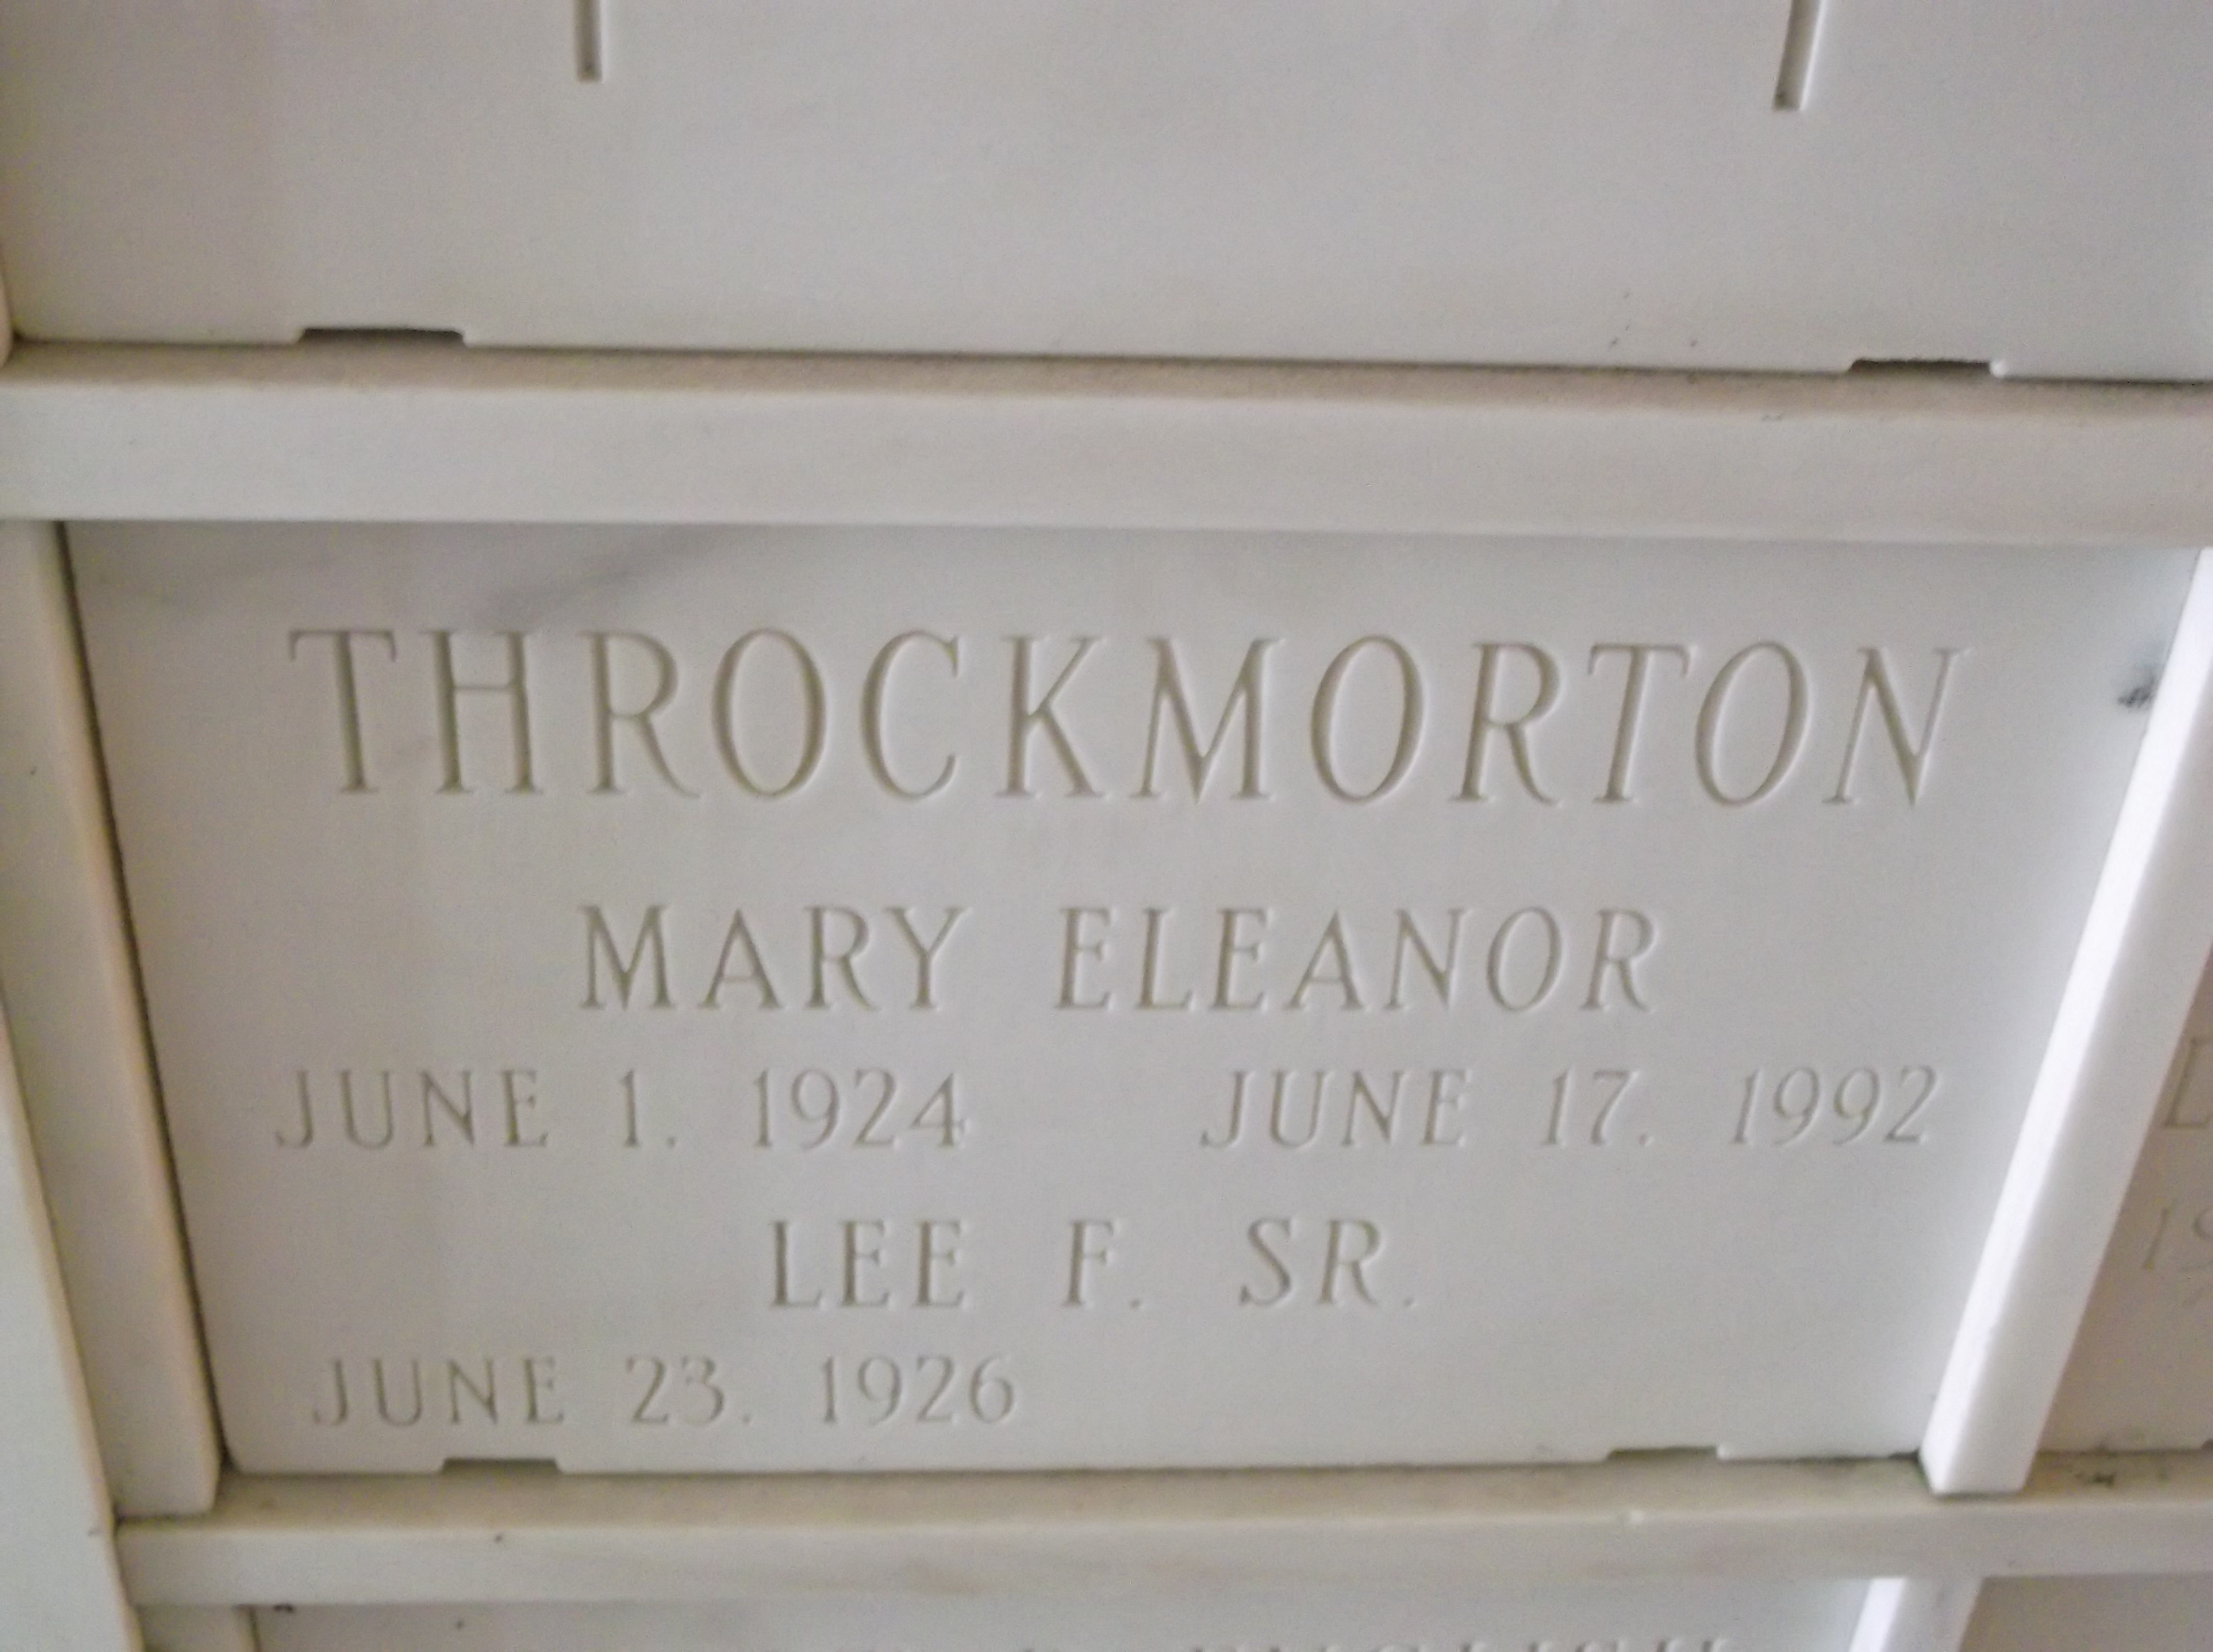 Lee F Throckmorton, Sr